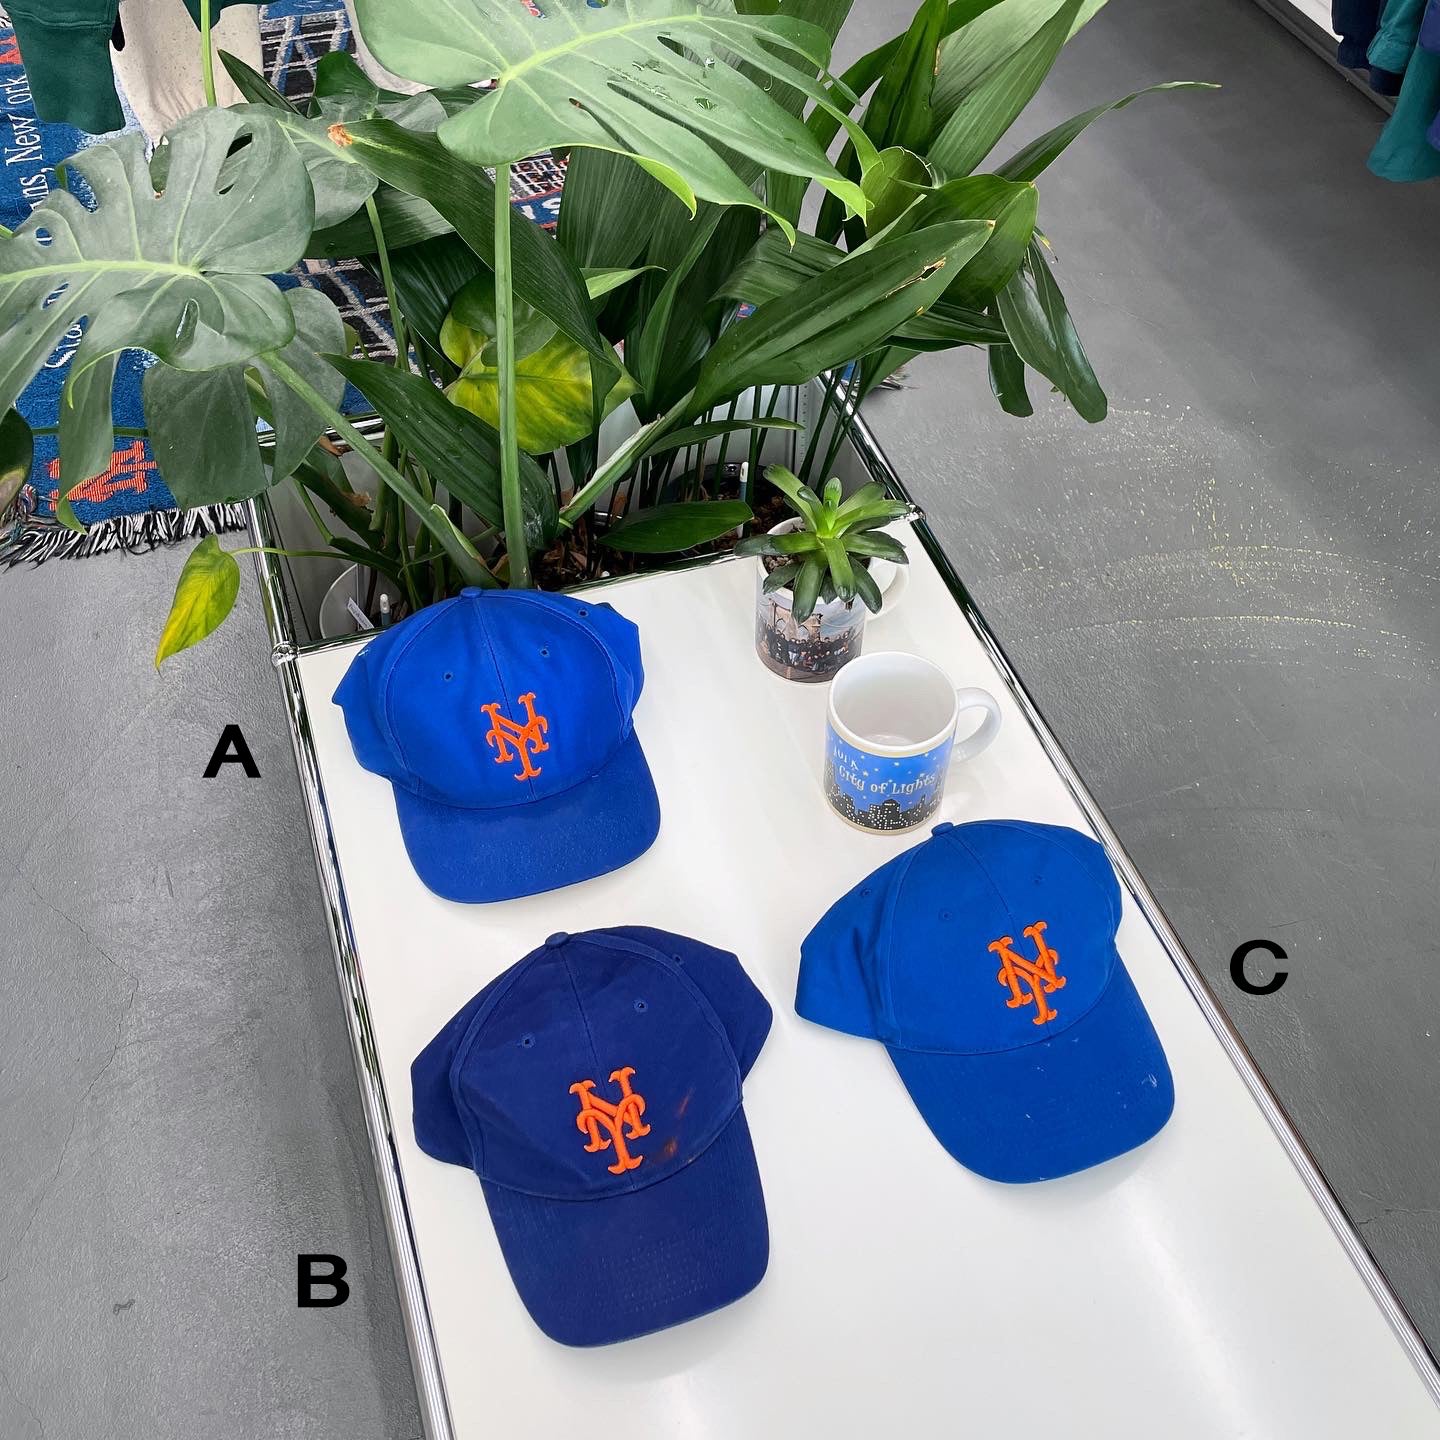 New York Mets Hat